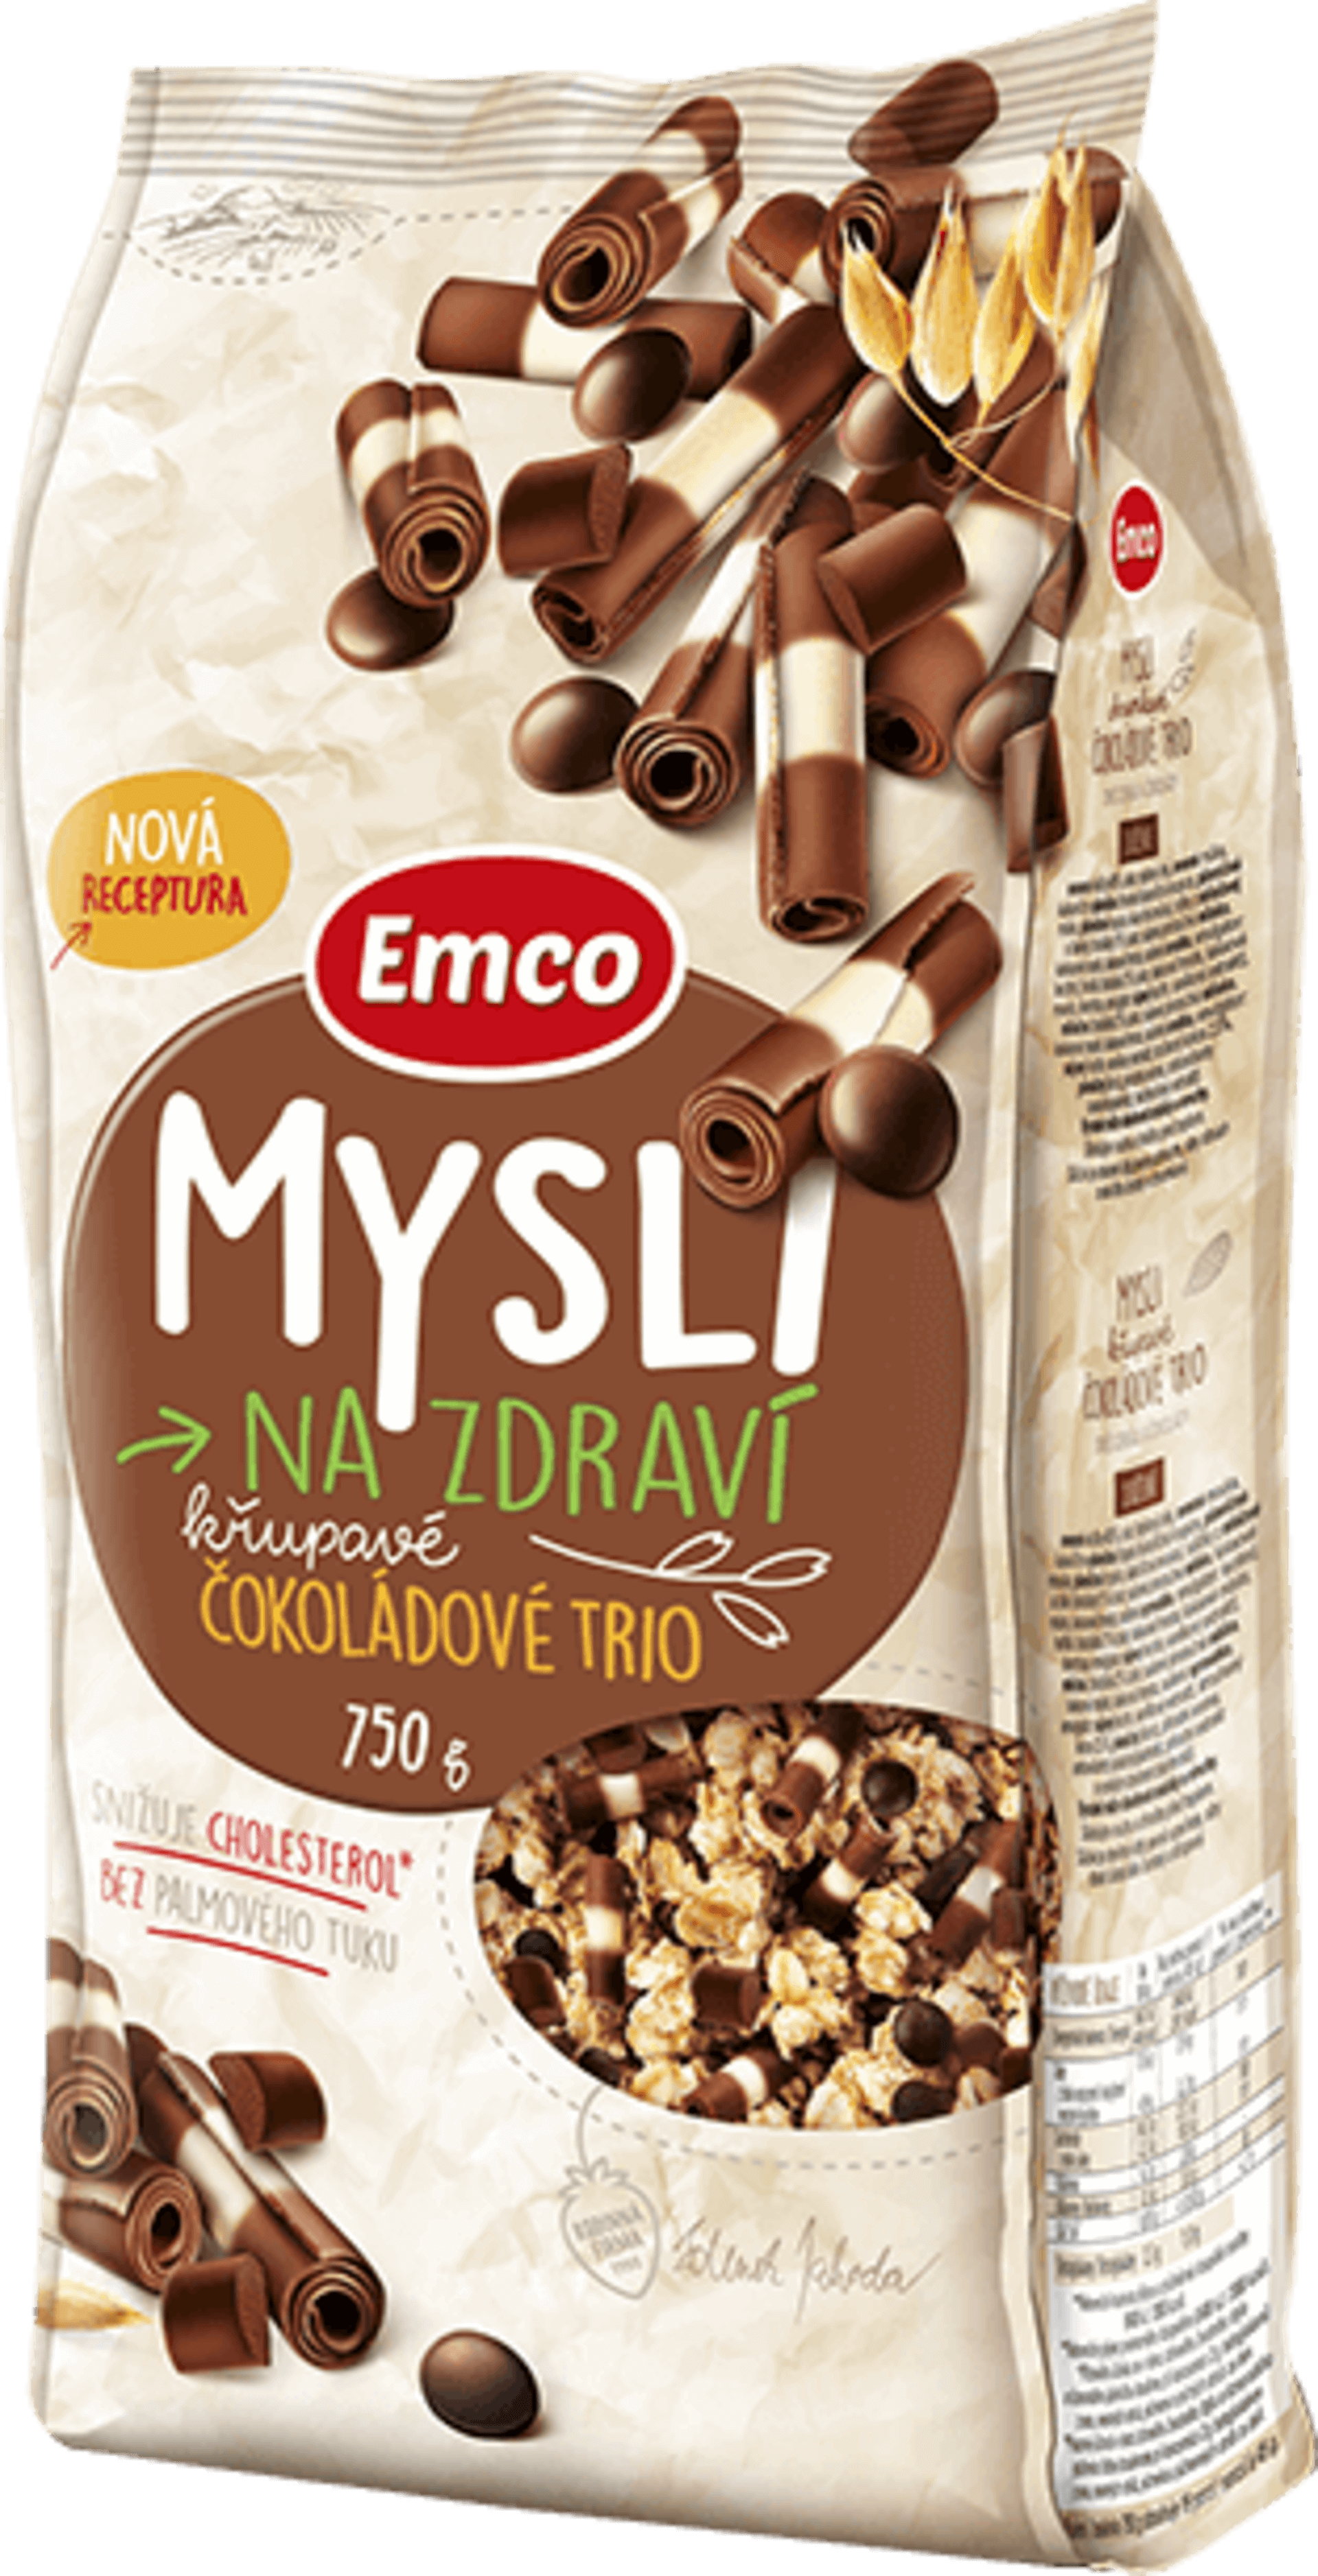 E-shop Emco Mysli - Čokoládové trio 750g